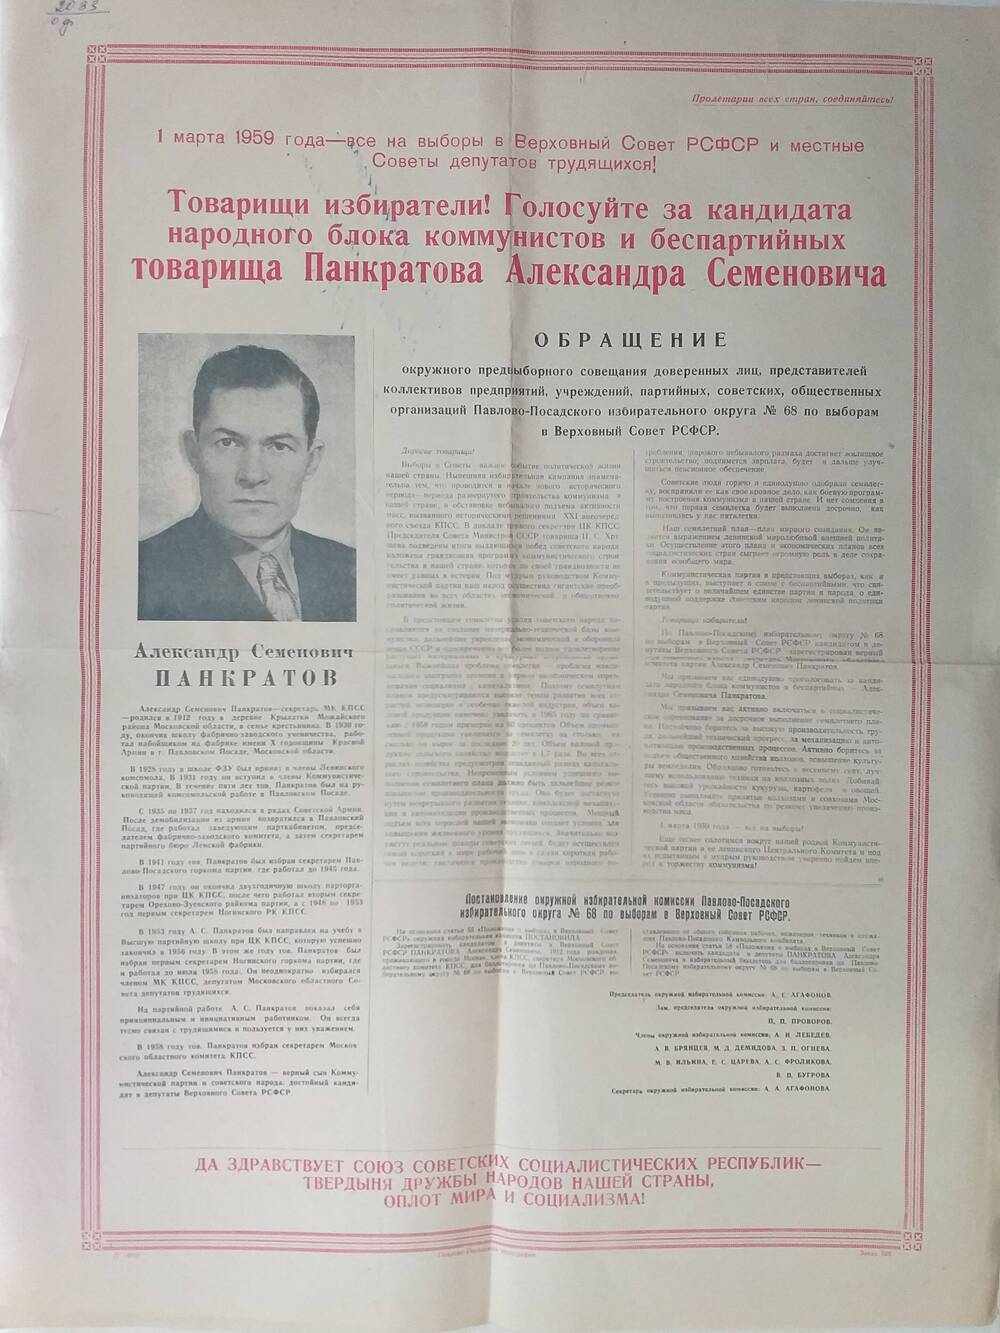 Плакат Призыв к голосованию на выборах 1 марта 1959 года за товарища Панкратова Александра Семёновича - секретаря Московского областного комитета КПСС, январь 1959 года.